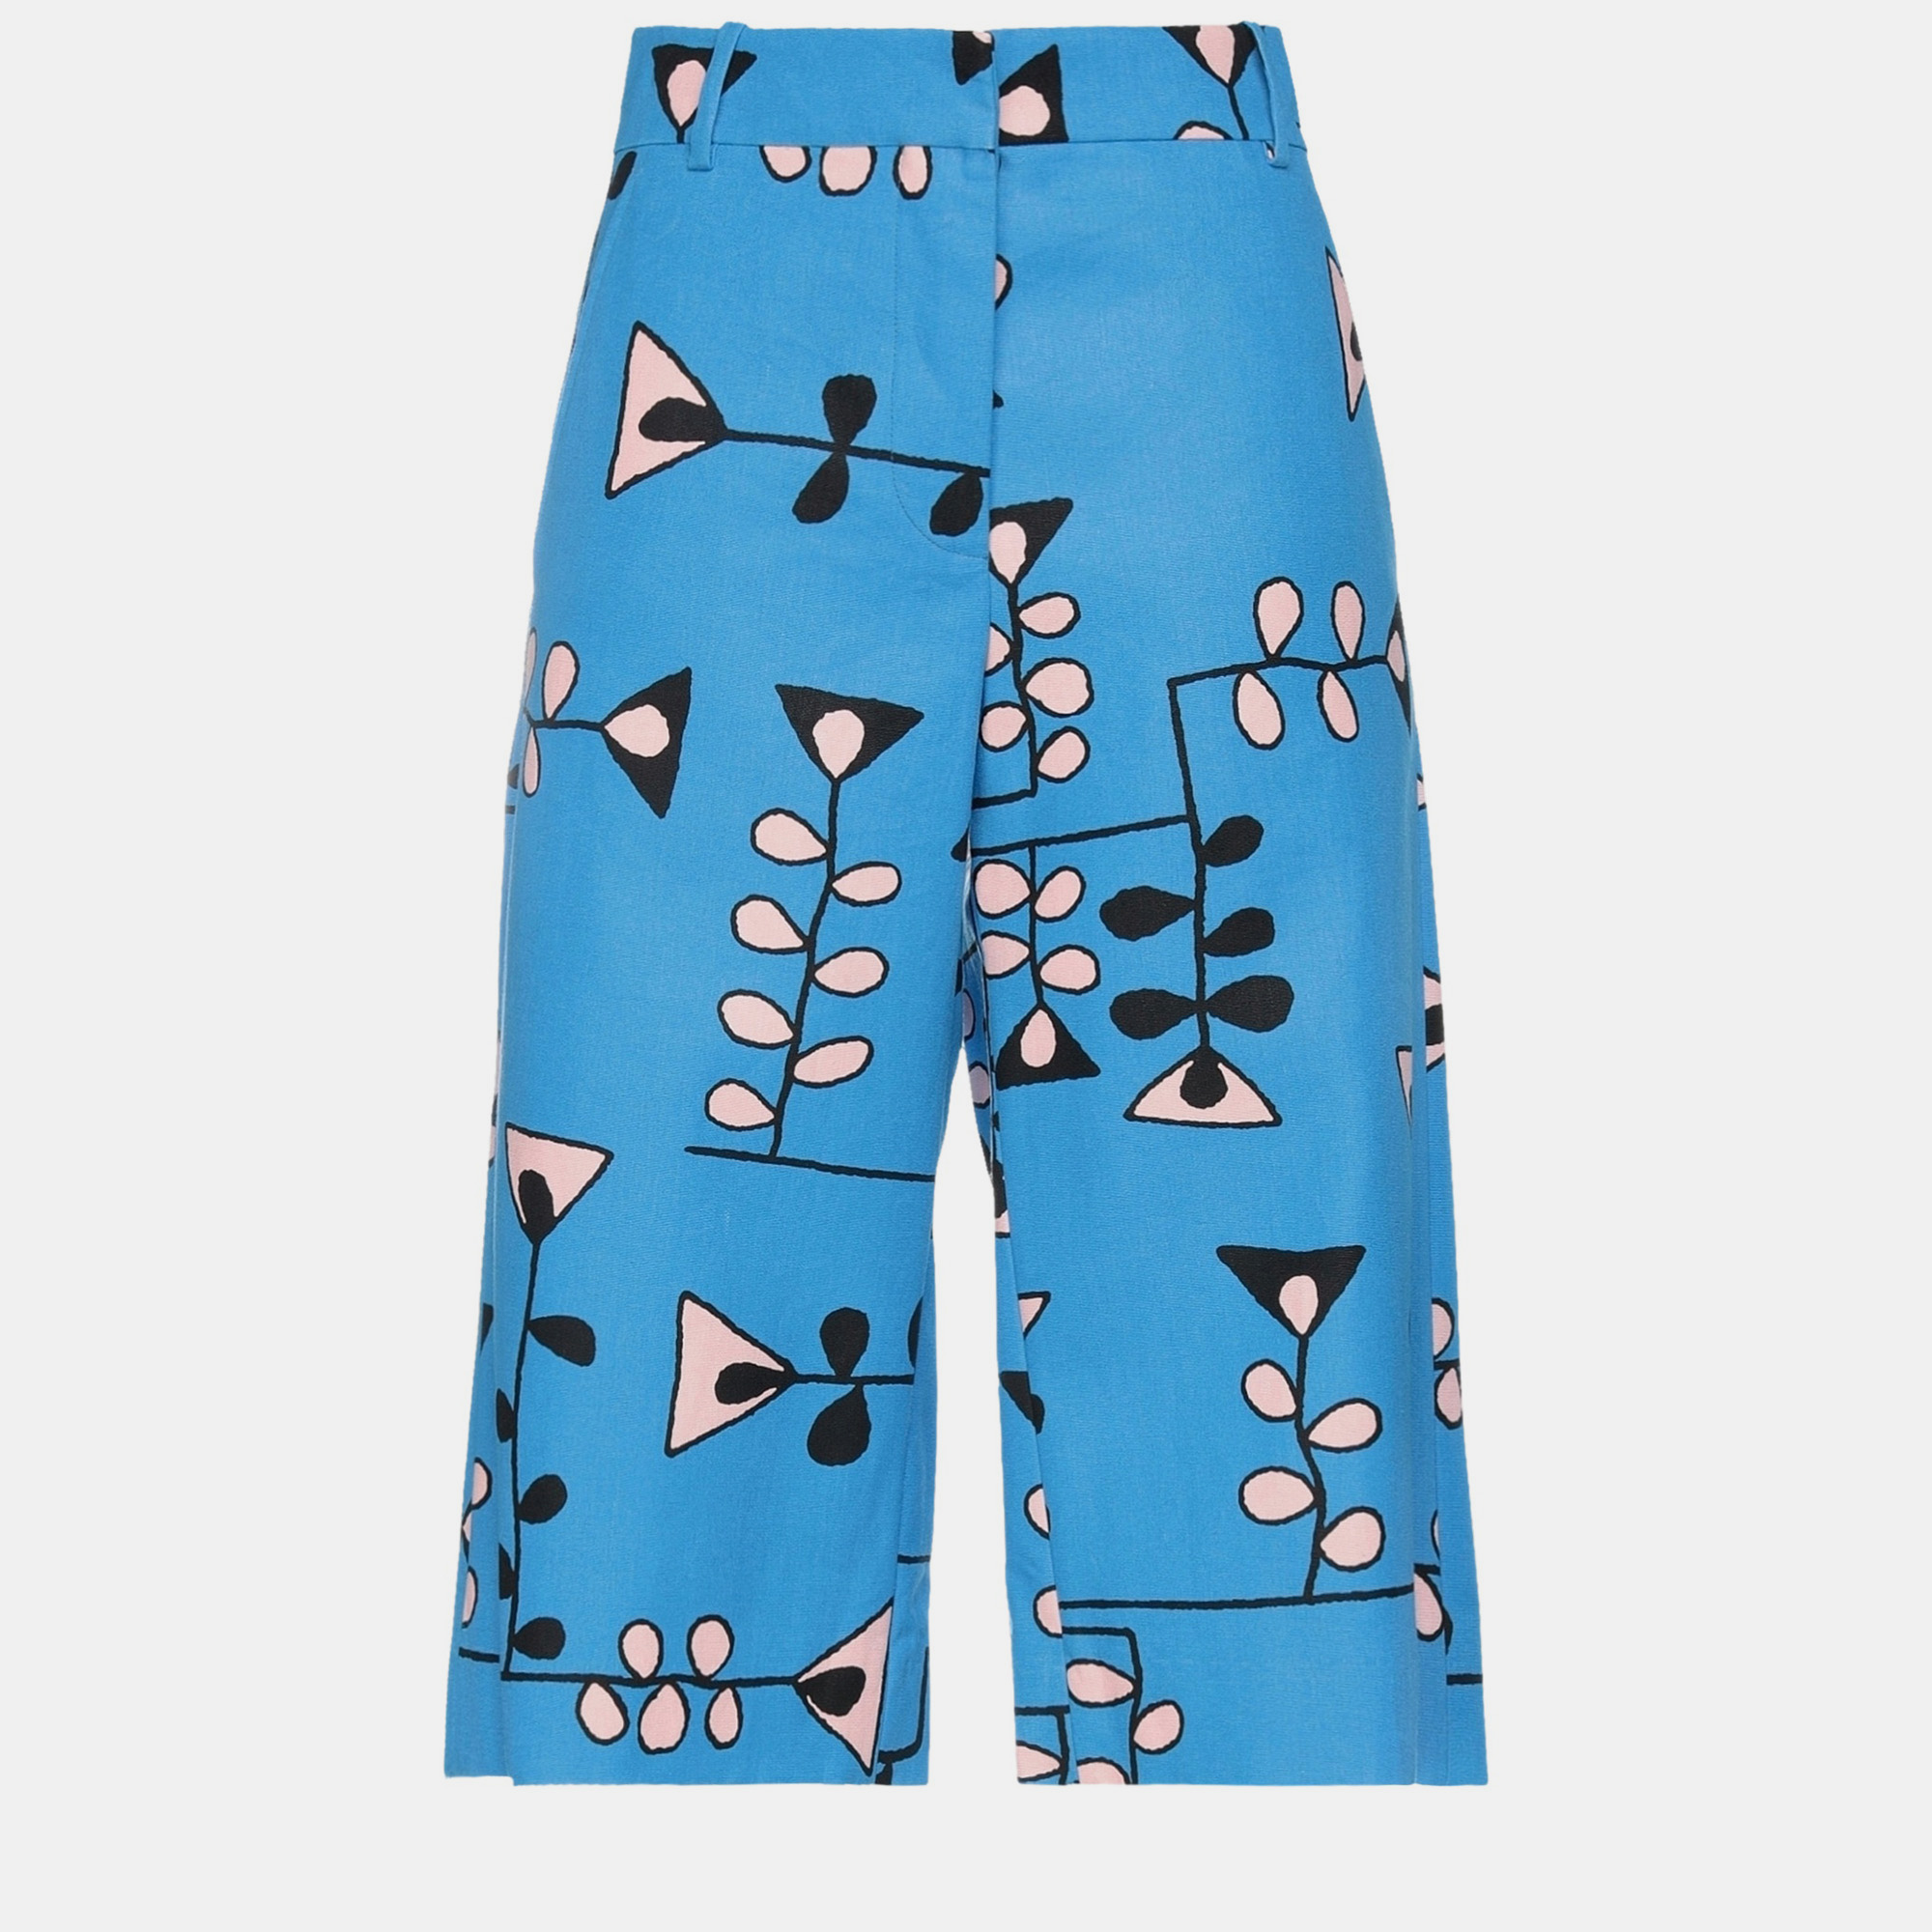 Marni blue print cotton cropped pants size 38